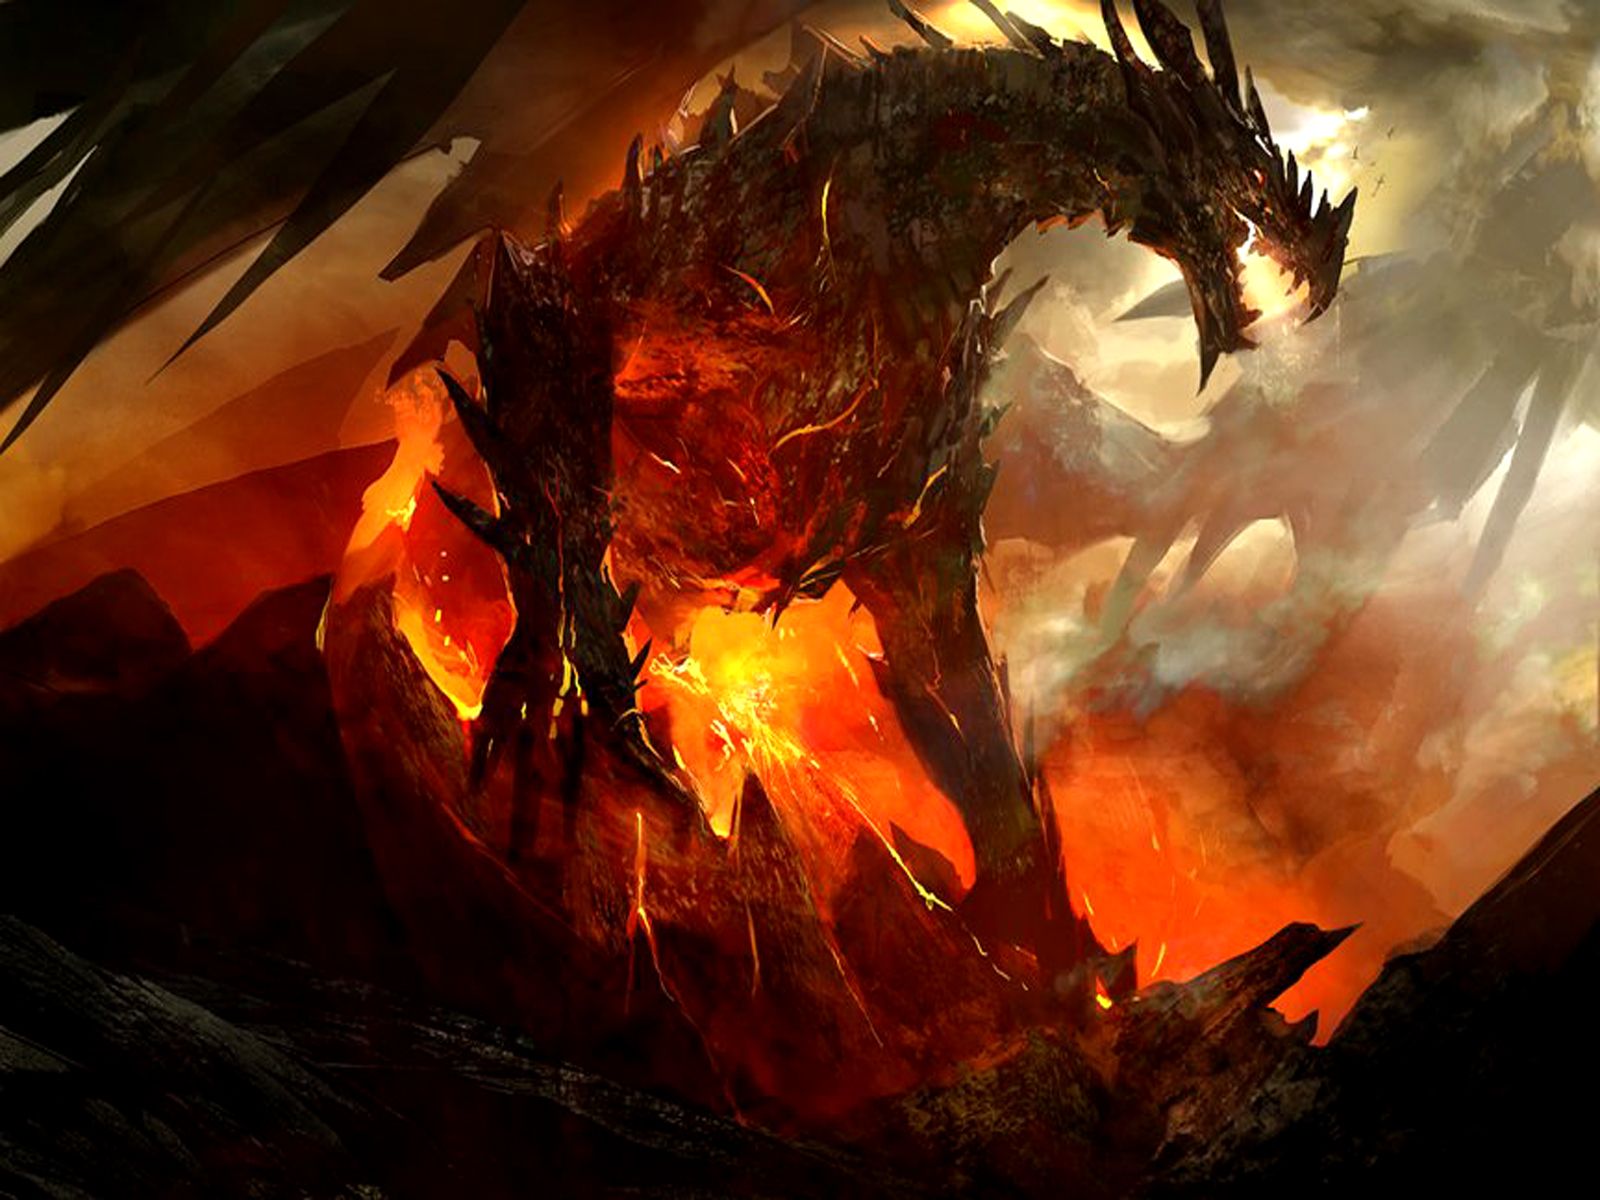  عکس استوک زیبا از اژدها در آتش خطرناک و سوزان با کیفیت بالا 